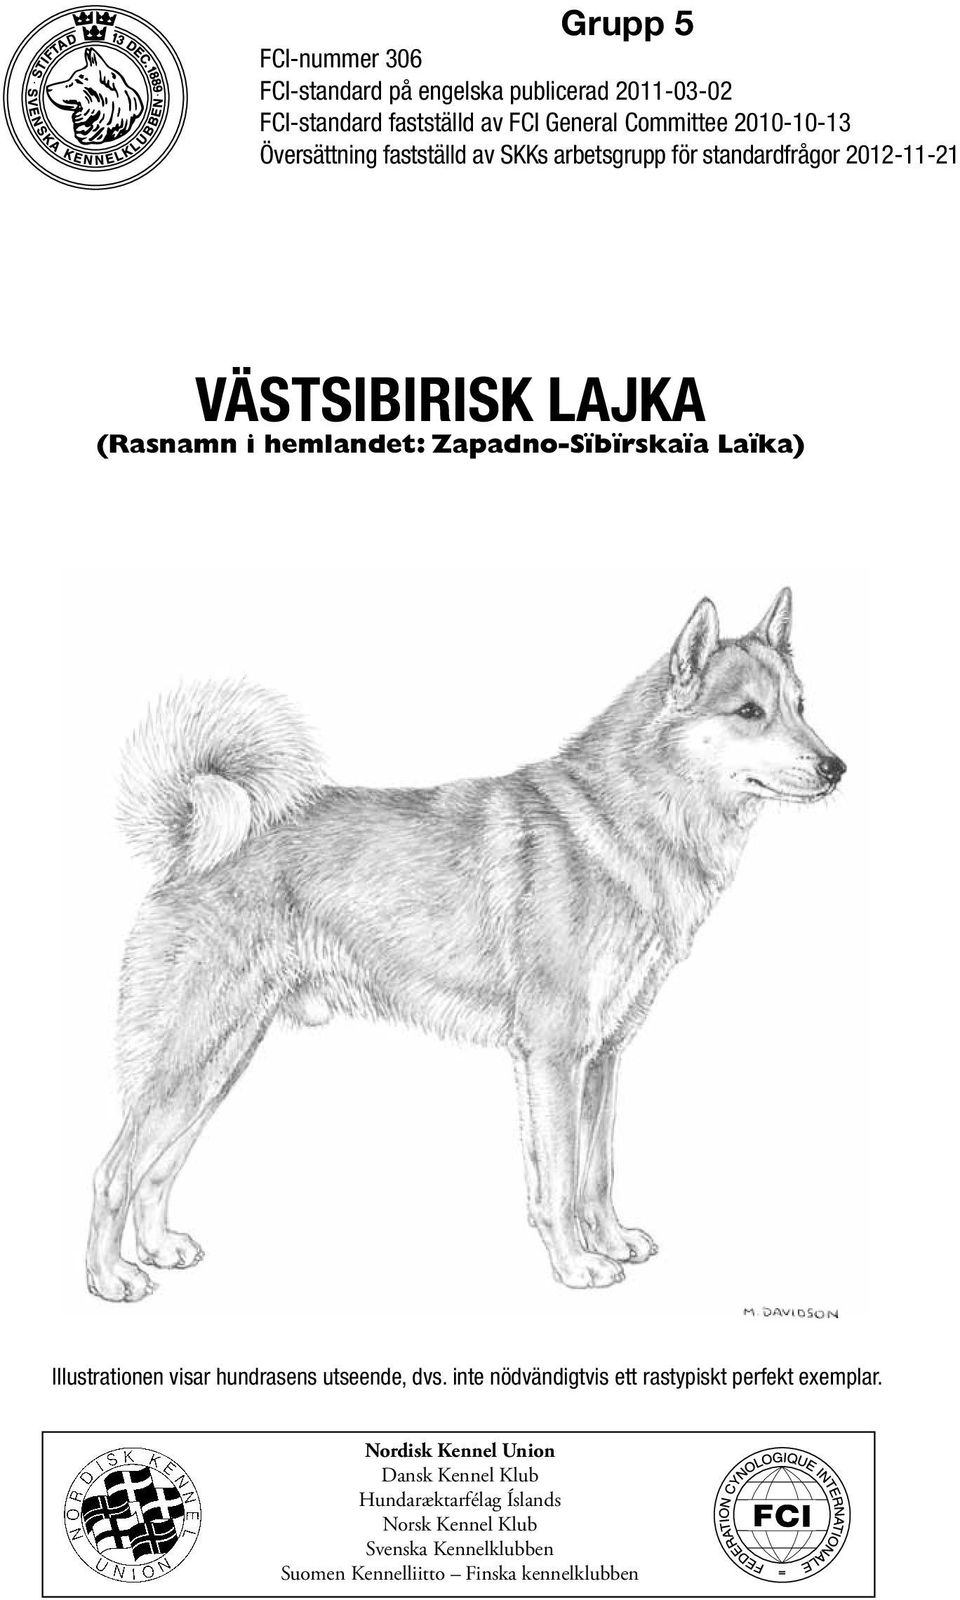 Zapadno-Sïbïrskaïa Laïka) Illustrationen visar hundrasens utseende, dvs. inte nödvändigtvis ett rastypiskt perfekt exemplar.